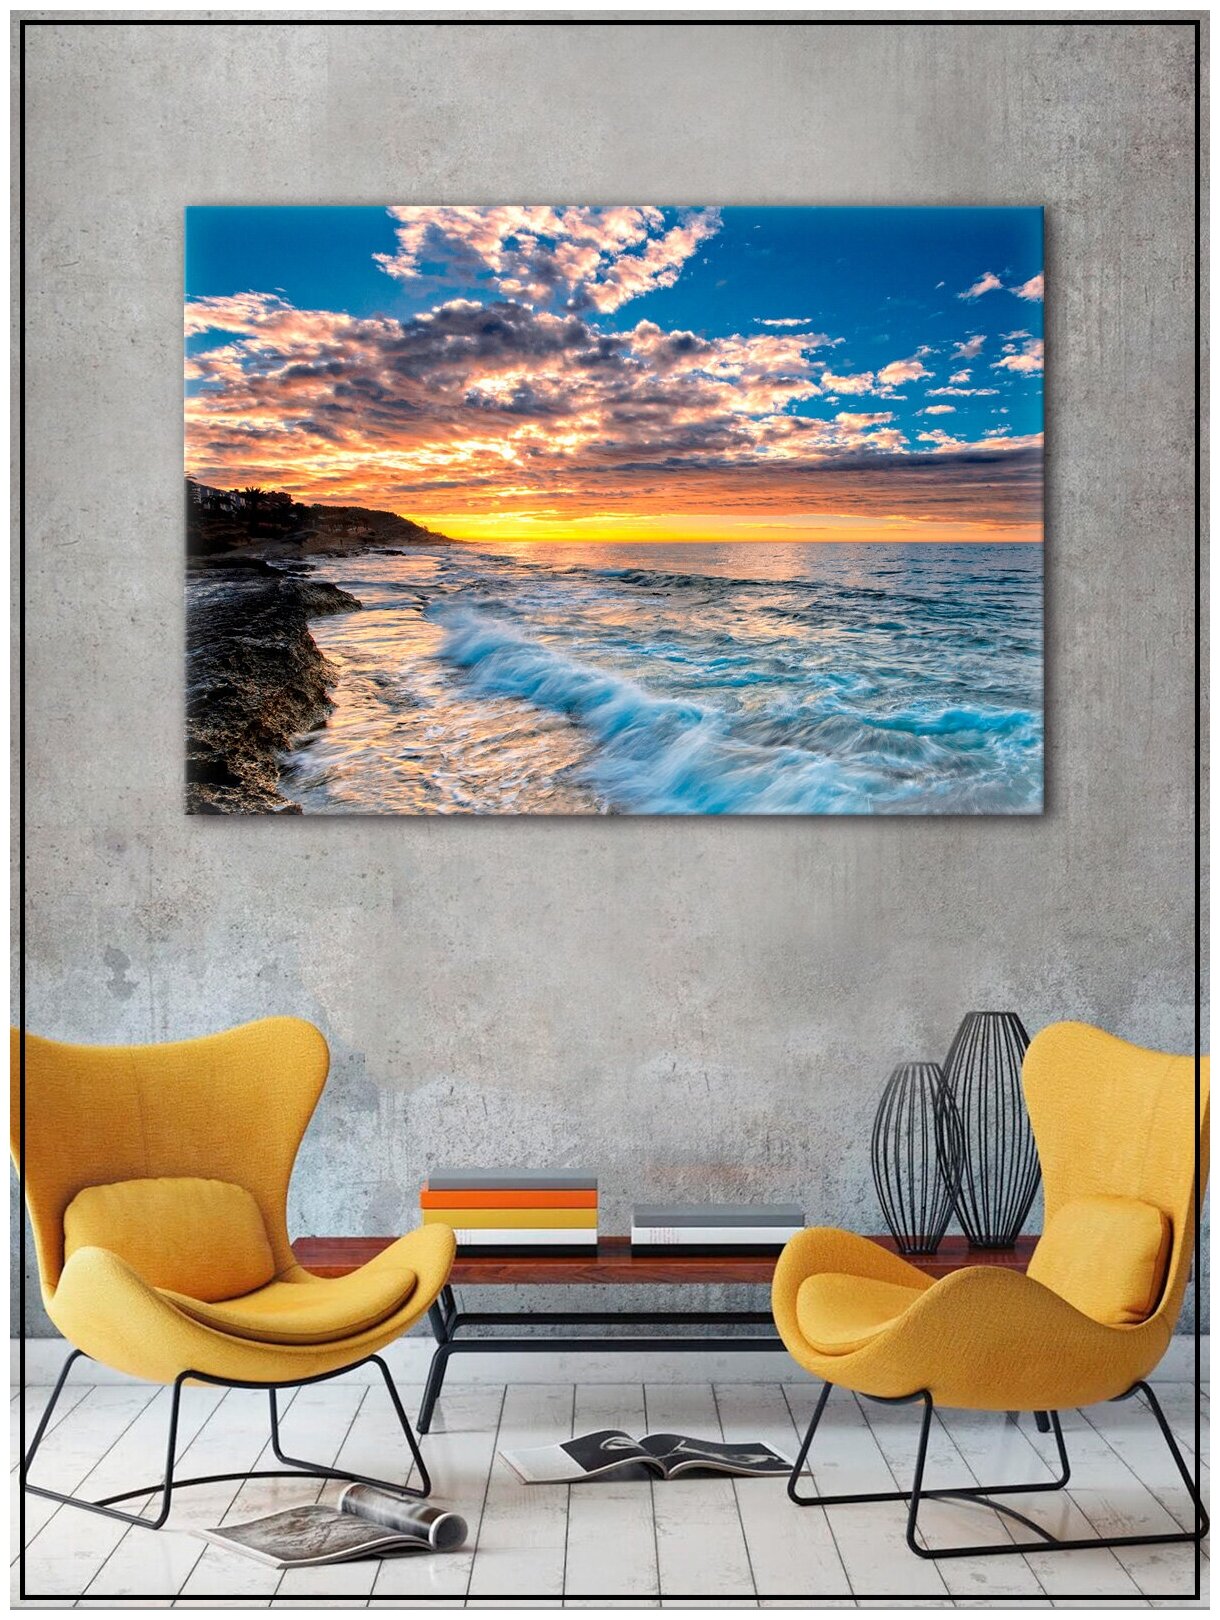 Картина для интерьера на натуральном хлопковом холсте "Рассвет на море", 55*77см, холст на подрамнике, картина в подарок для дома